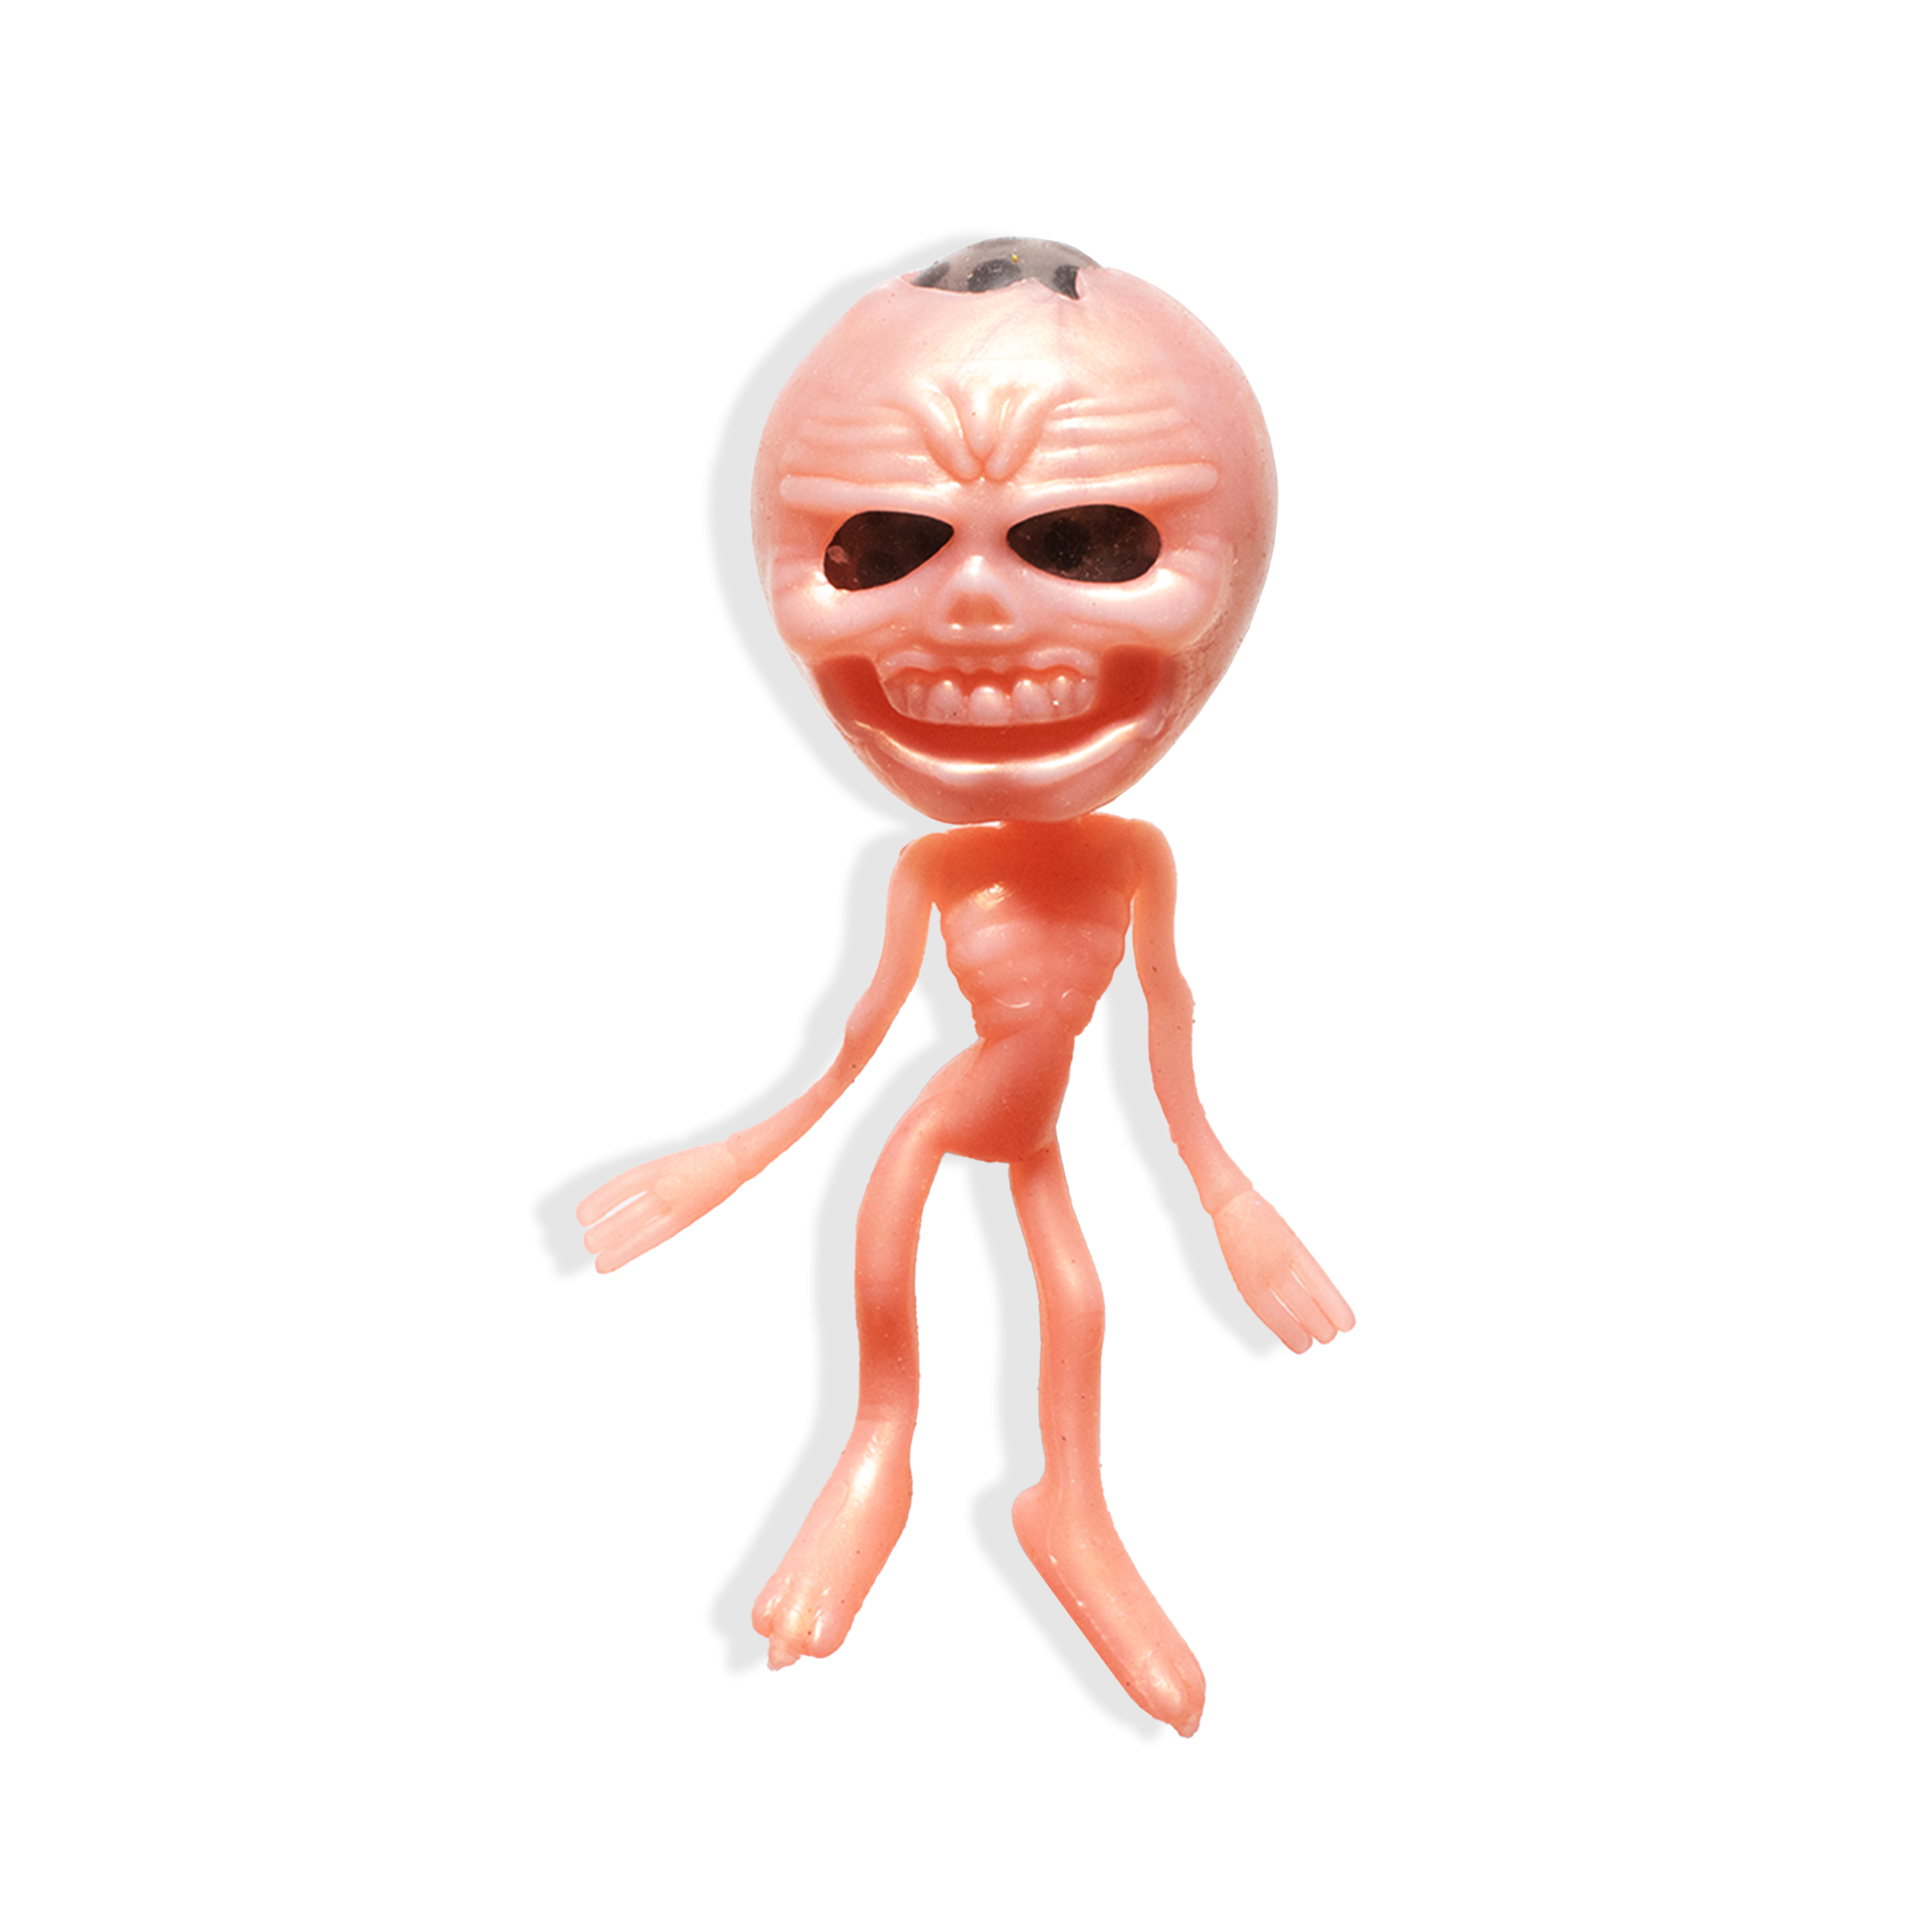 Alien Figure - Assorted Colour, 1 Pc